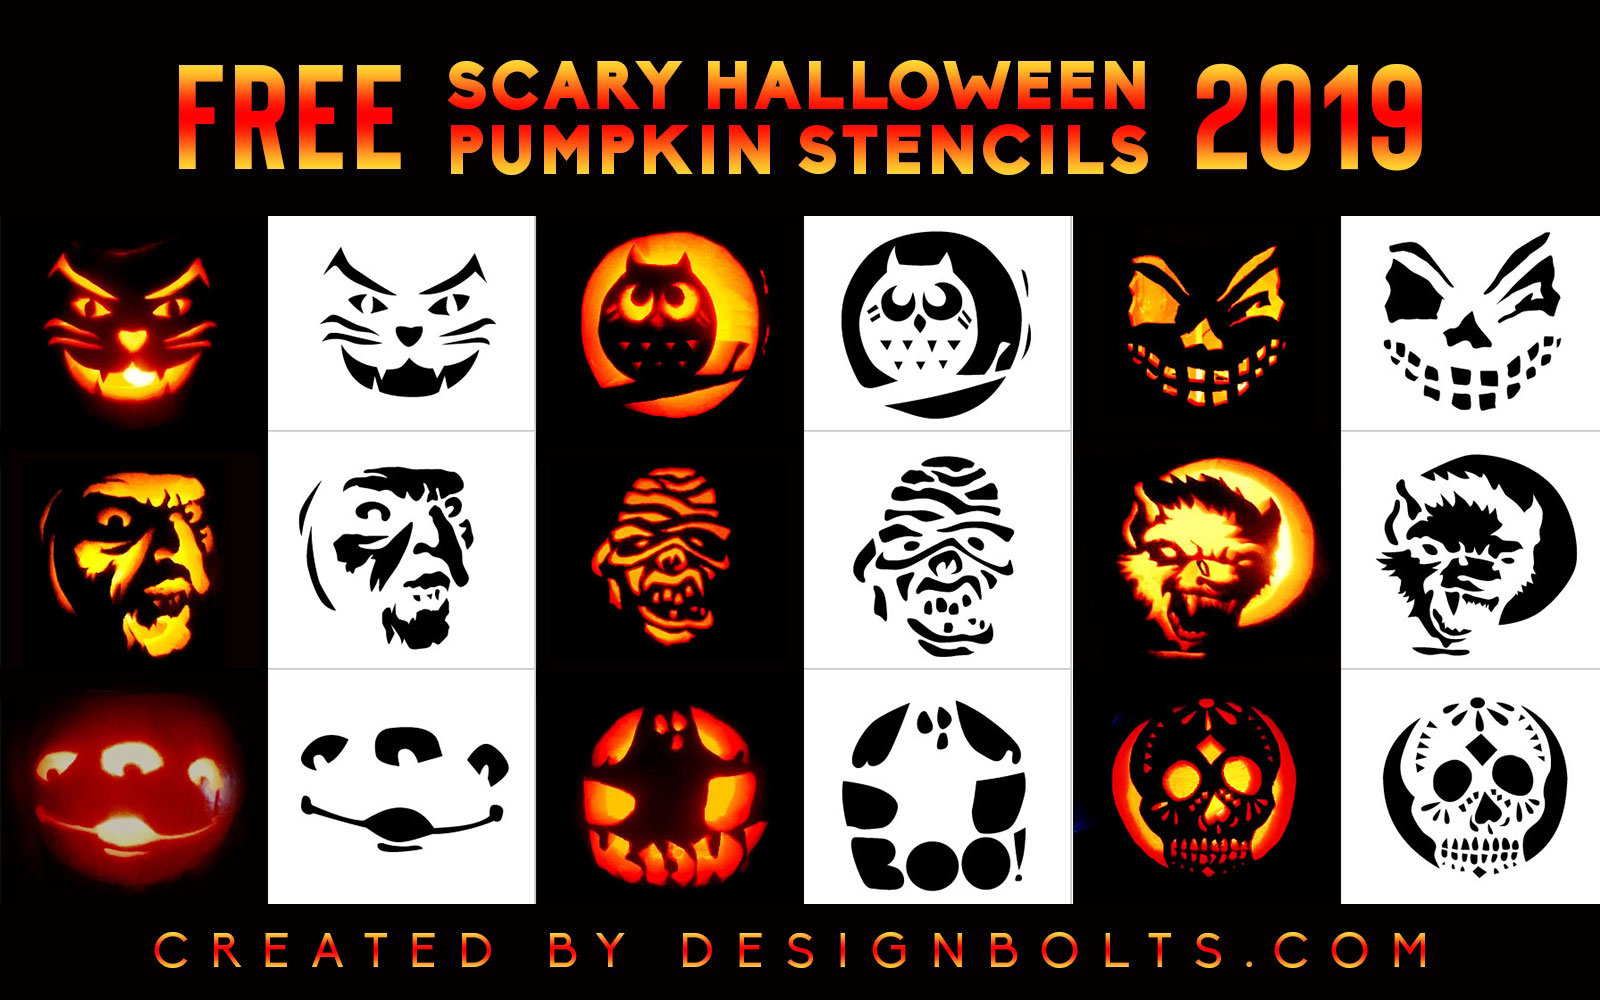 10 Scary Halloween Pumpkin Carving Stencils Ideas Patterns For 2019 Designbolts